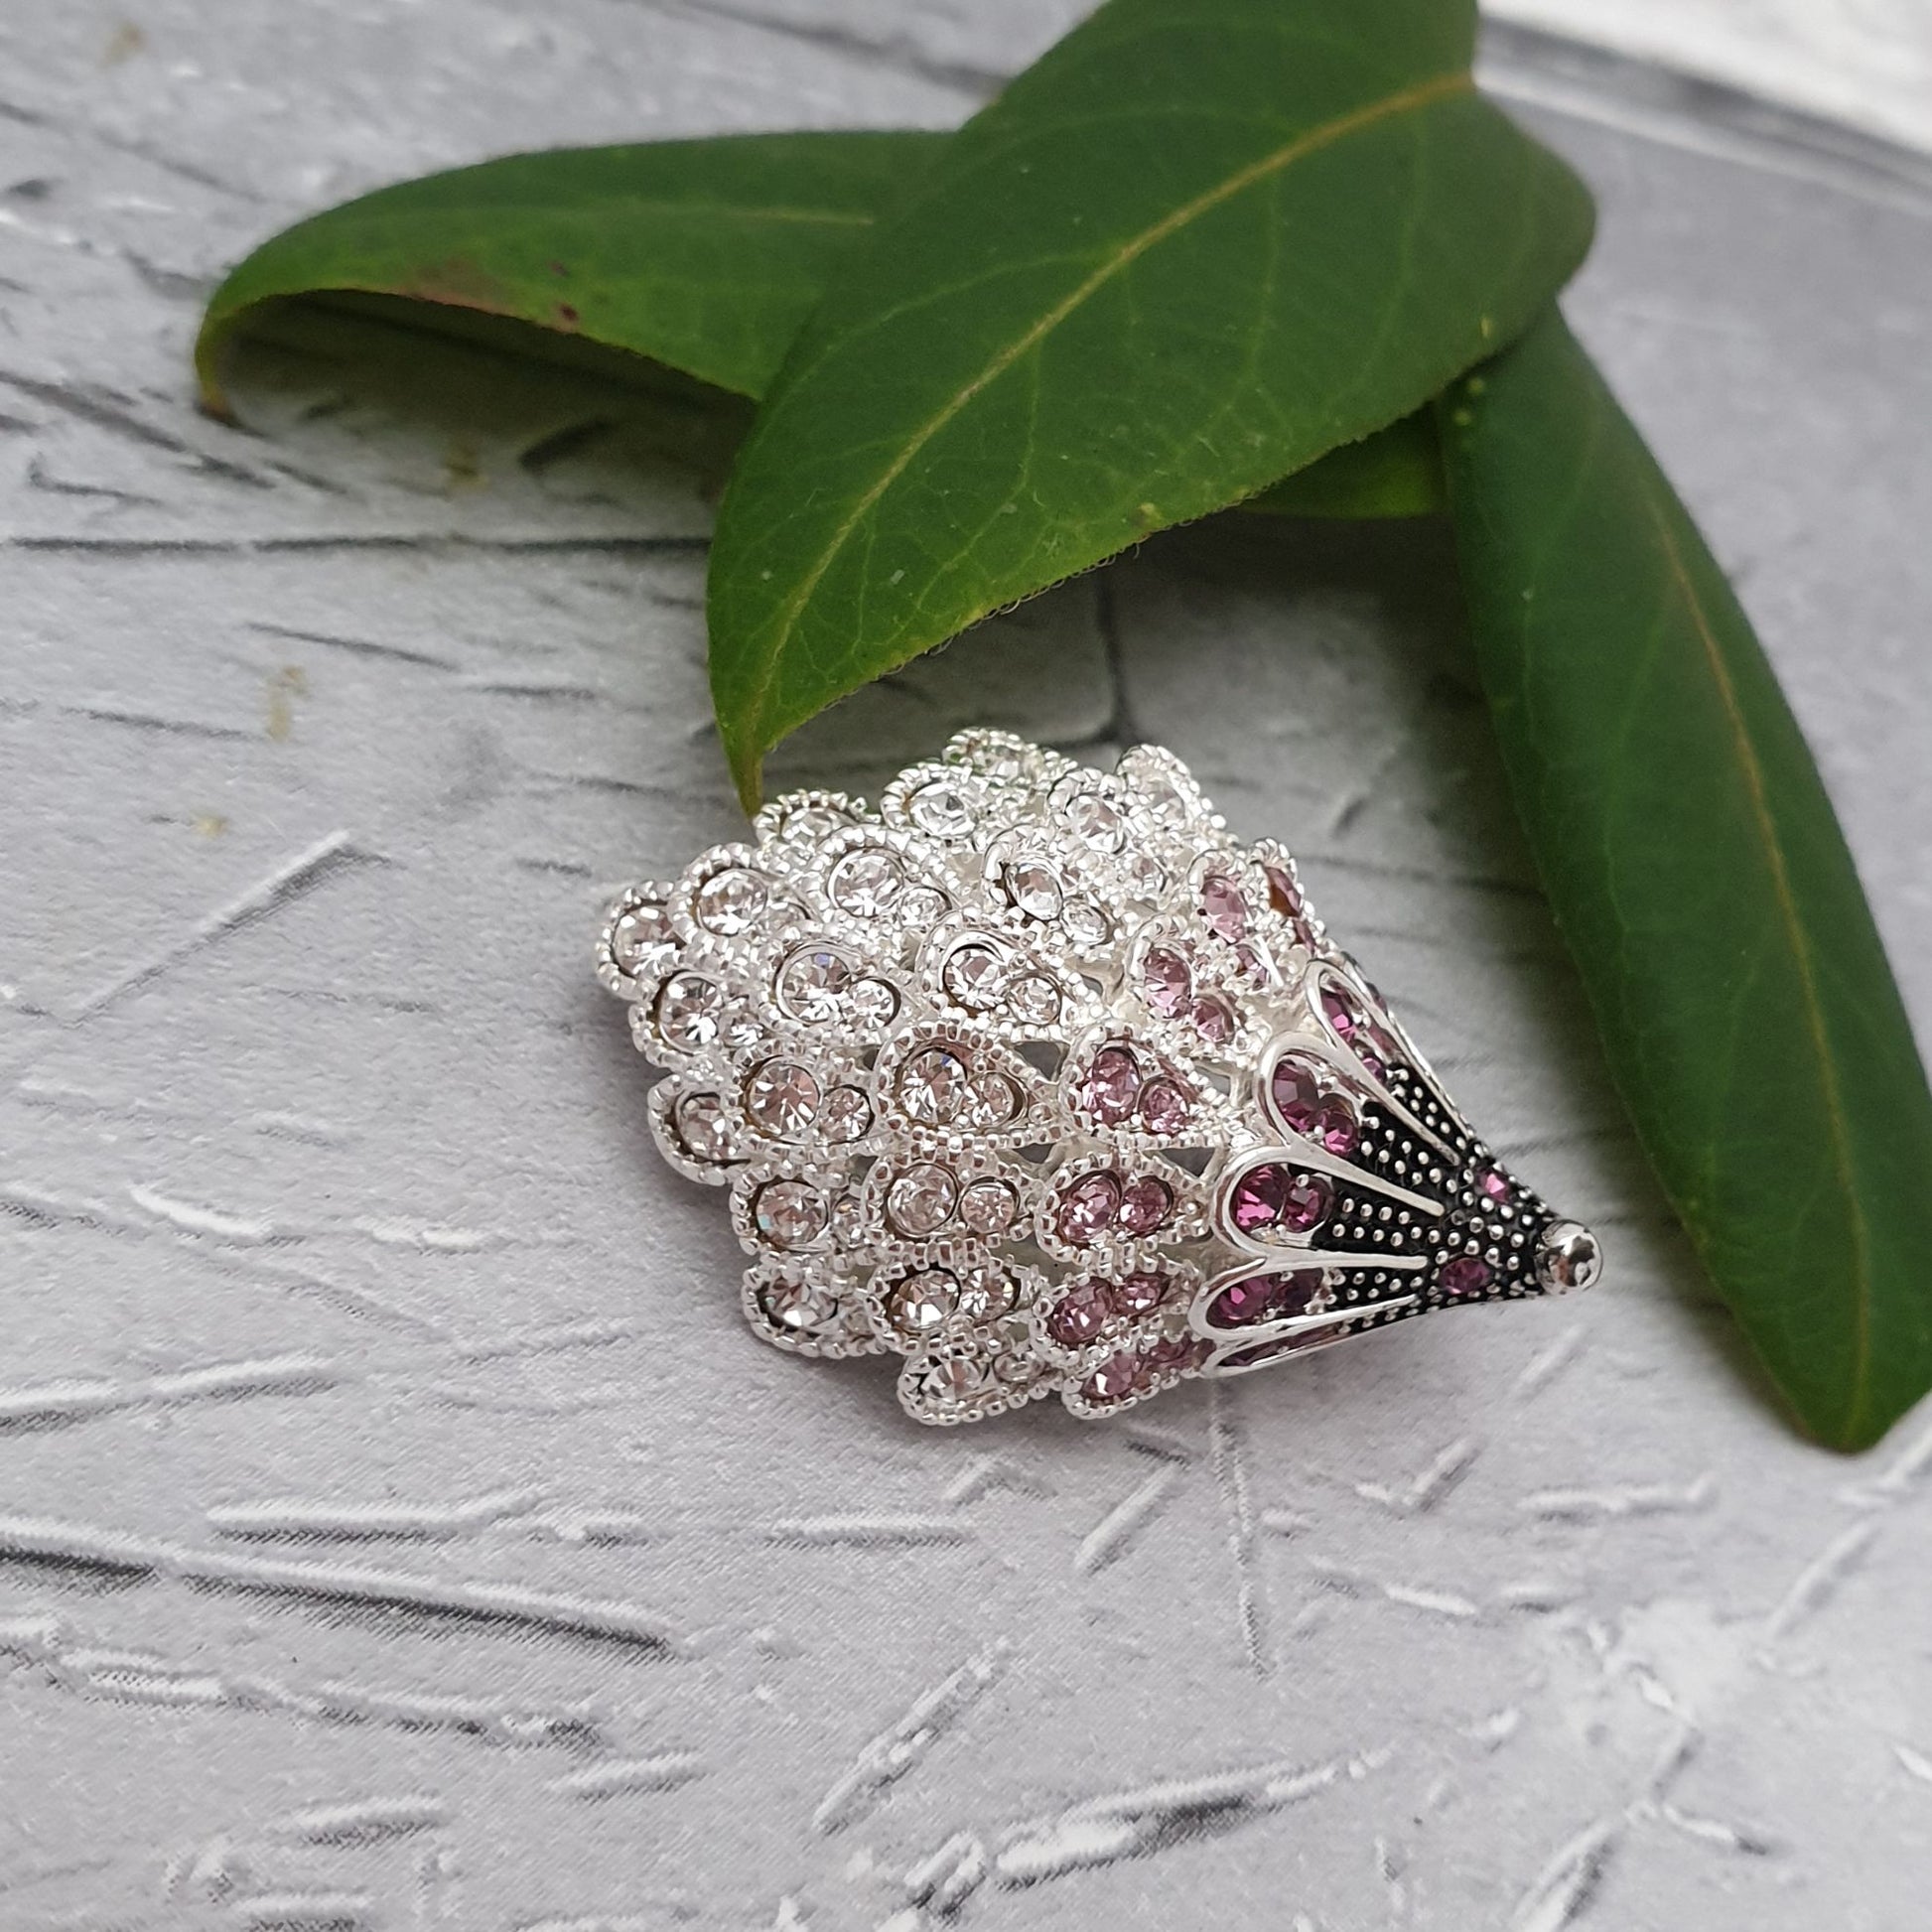 Hedgehog brooch decorated in pink diamante crystals